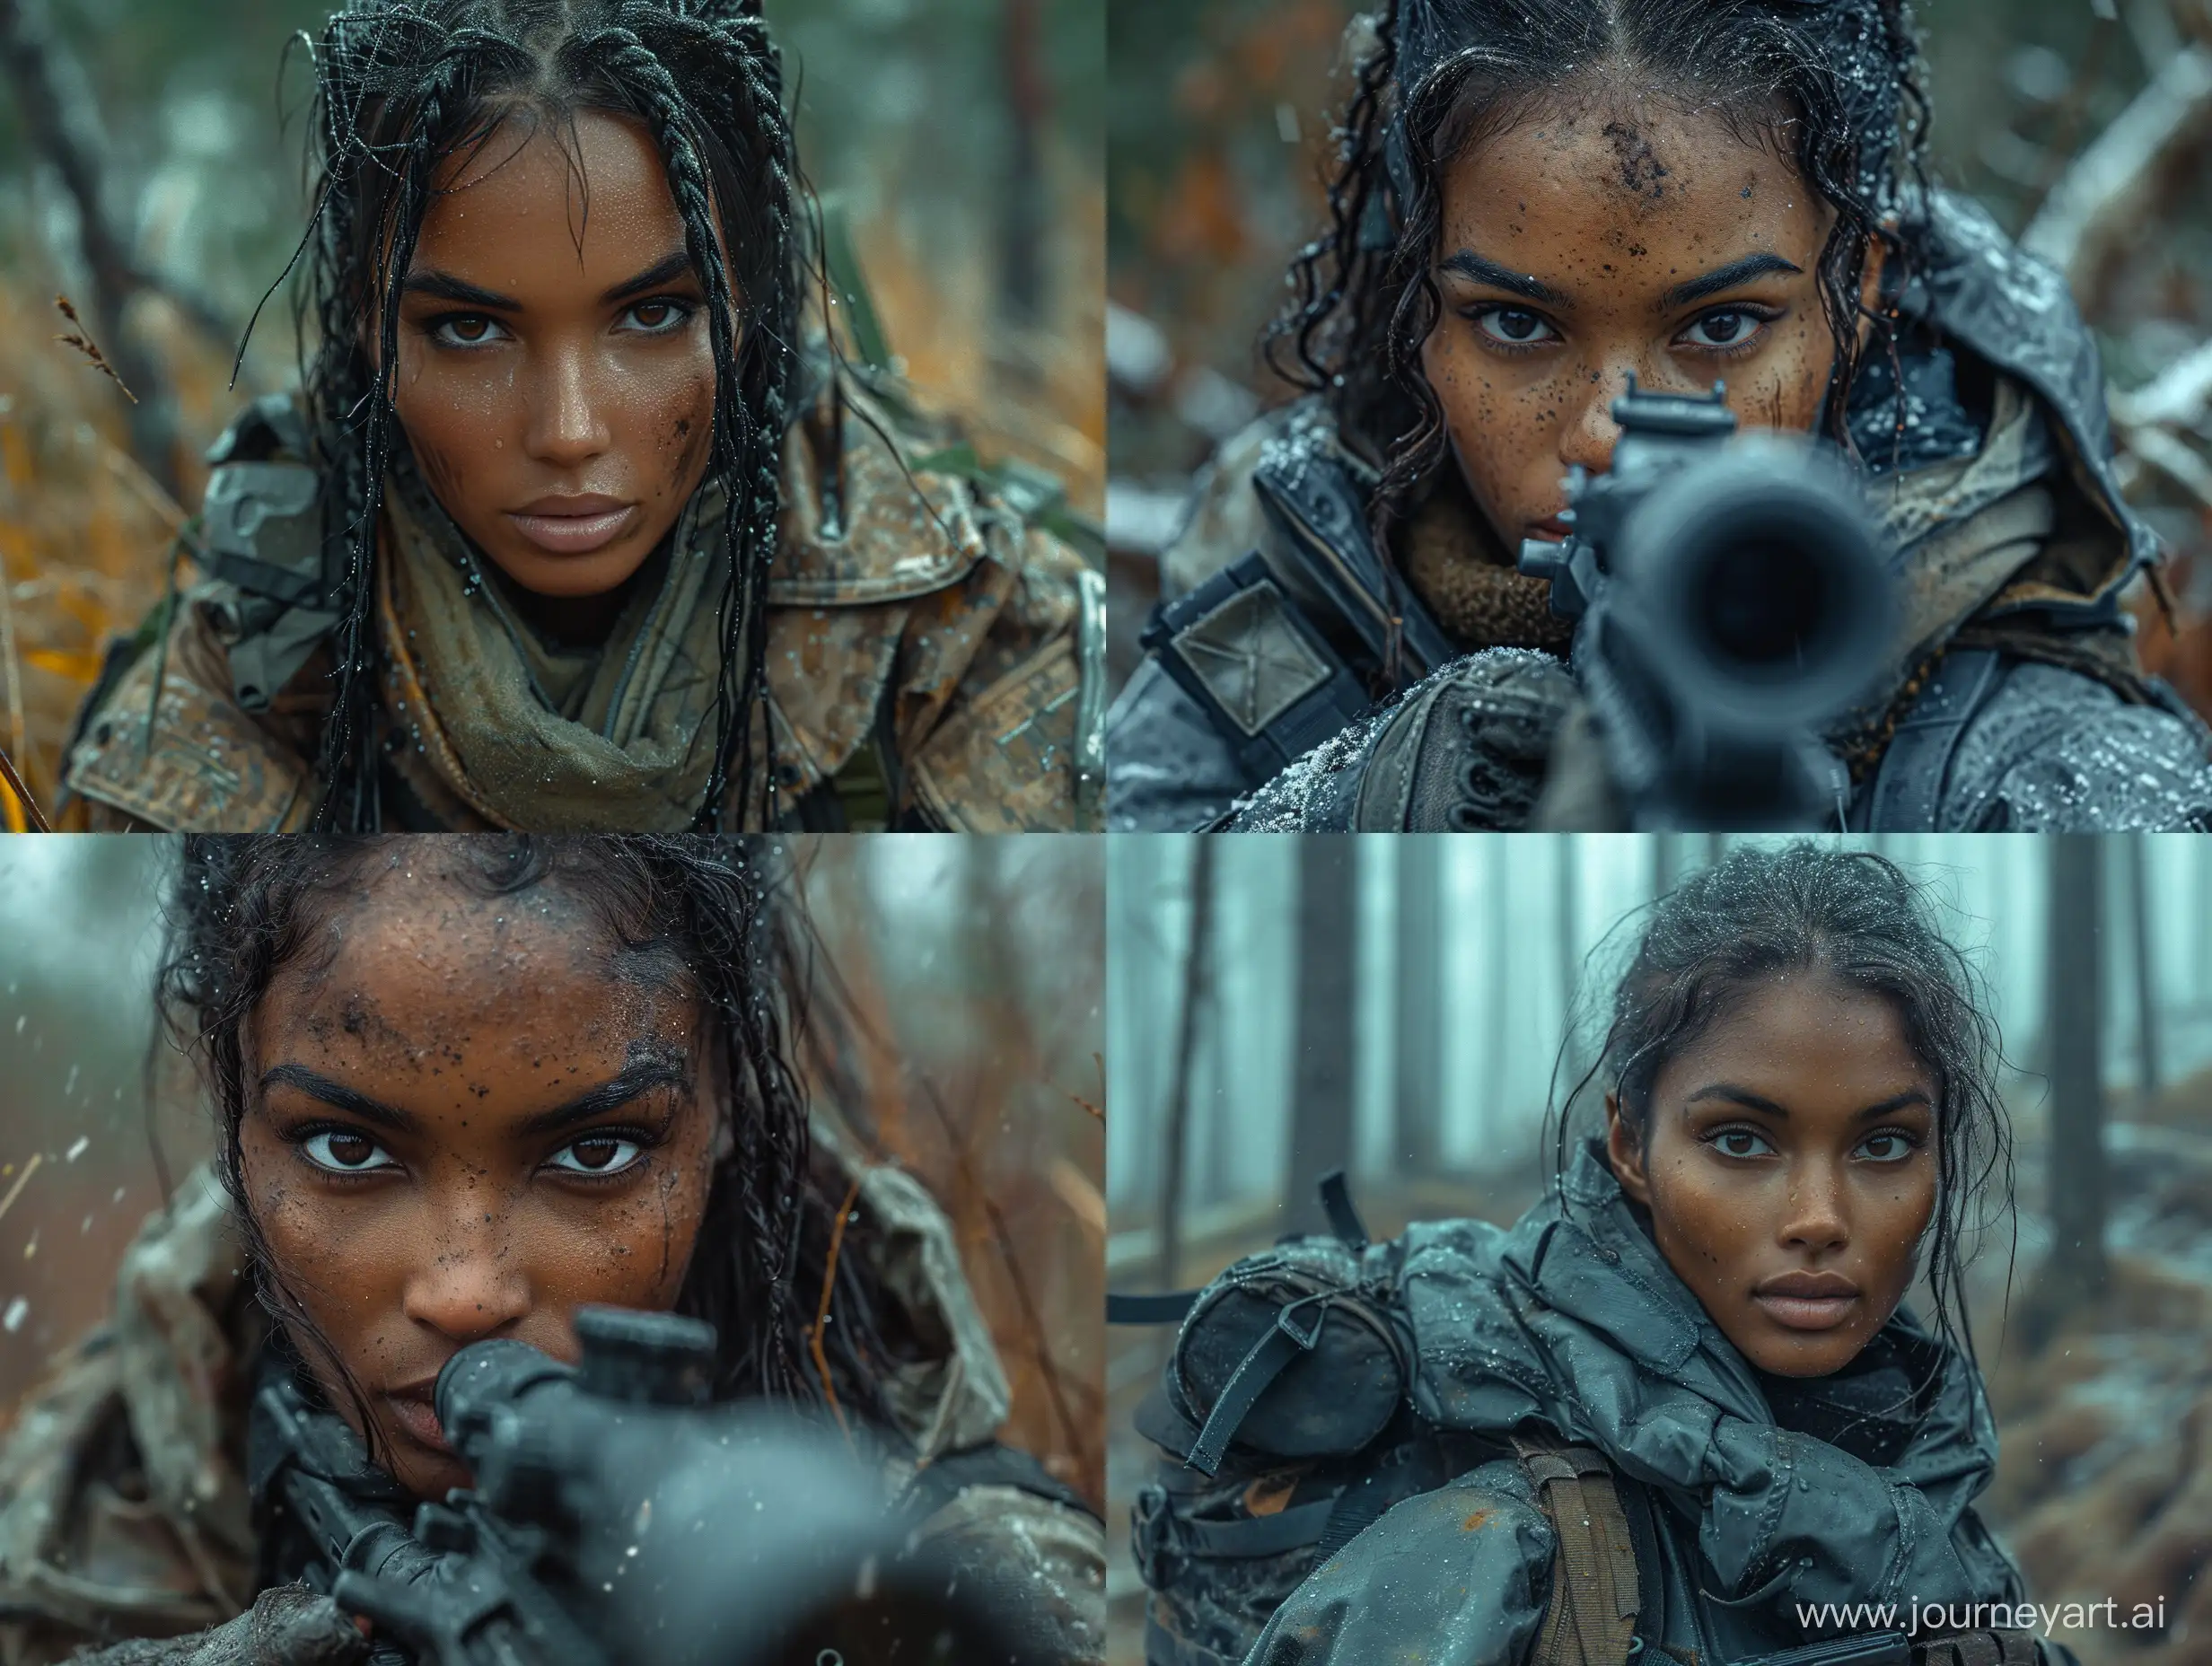 Hyper-Realistic-Photo-of-DarkSkinned-Female-Sheva-Alomar-in-STALKER-Dark-Tactical-Setting